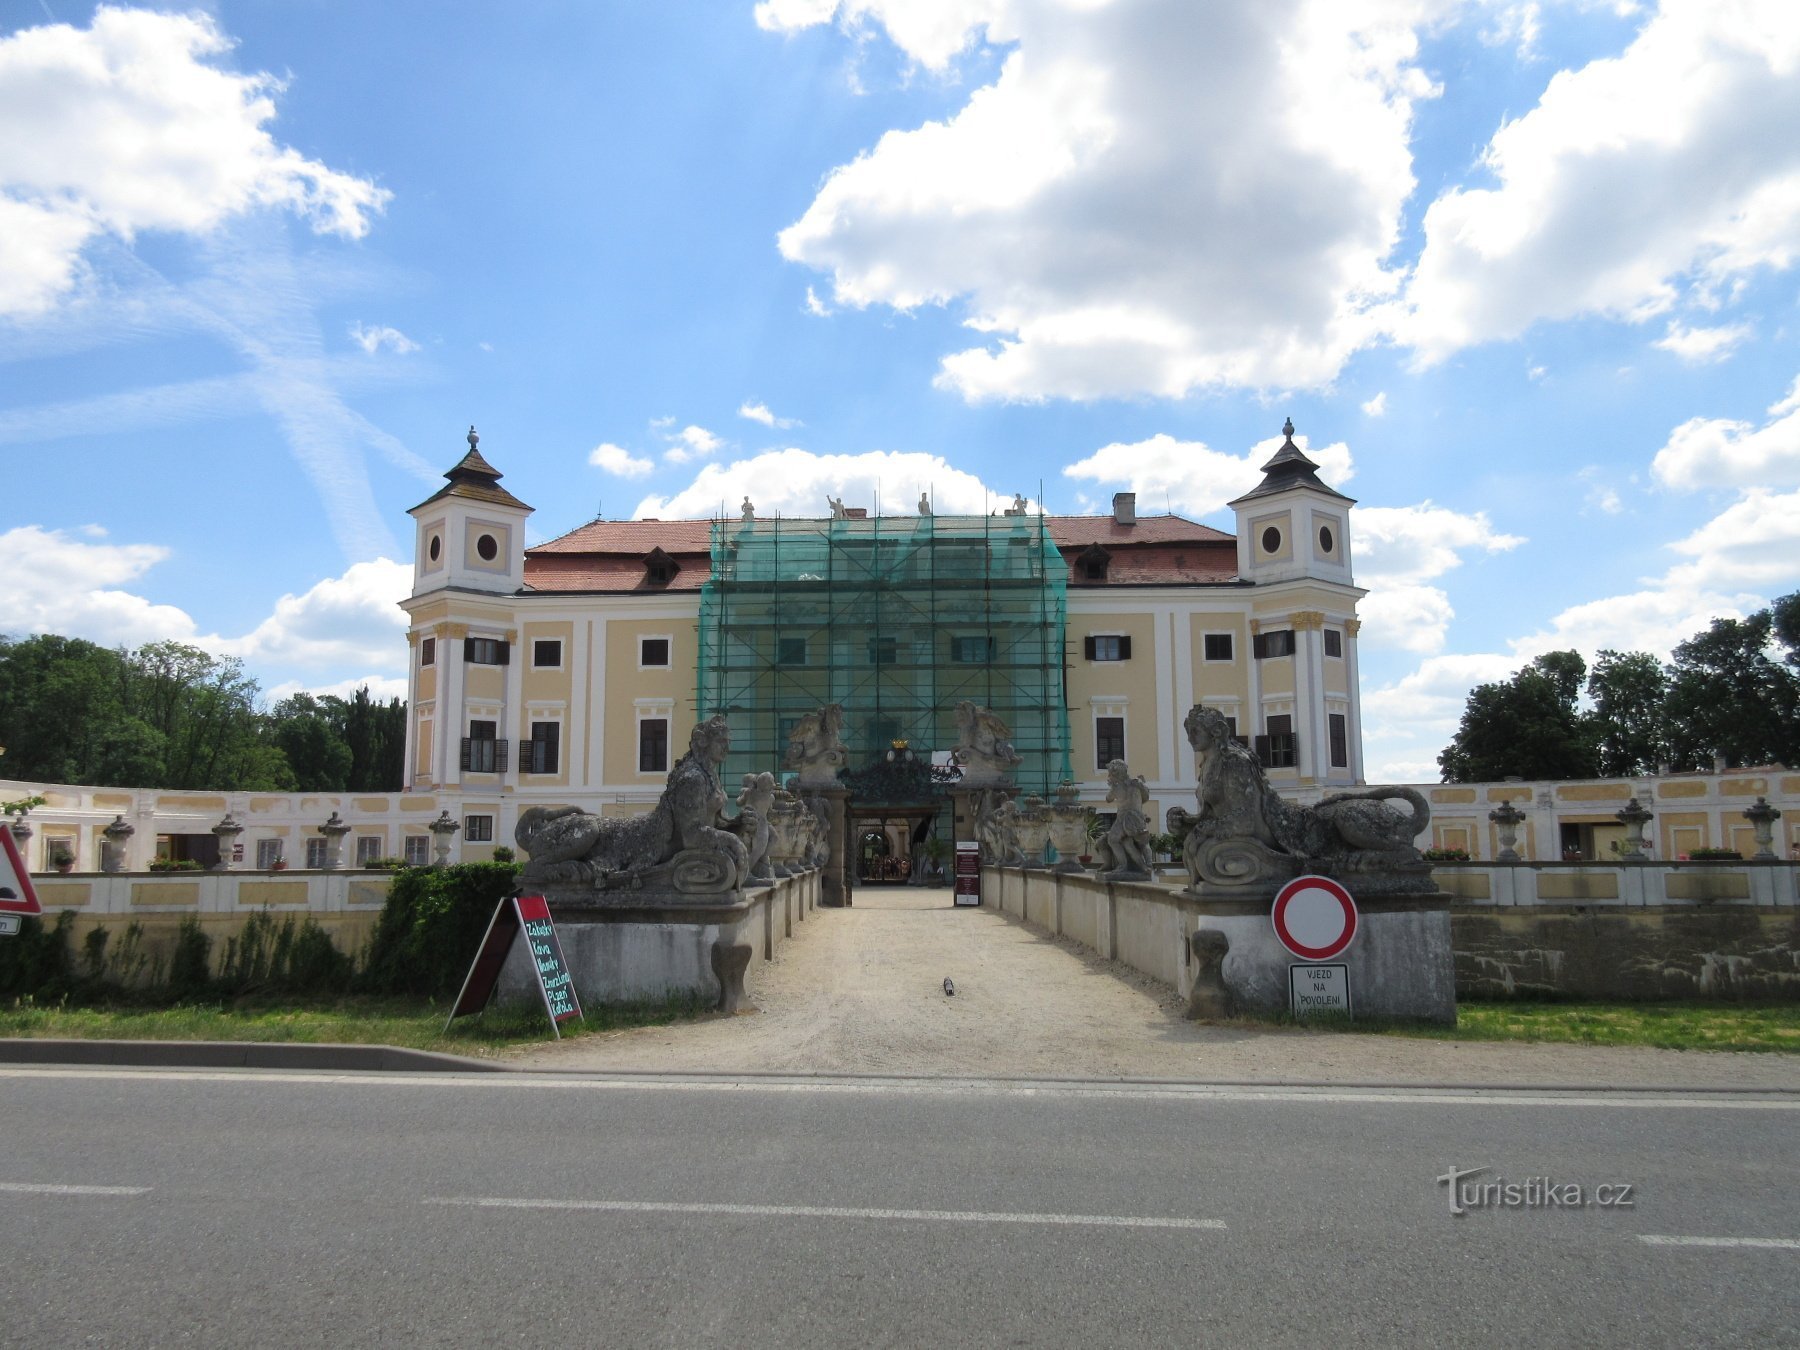 Milotice - statligt slott och dess historia